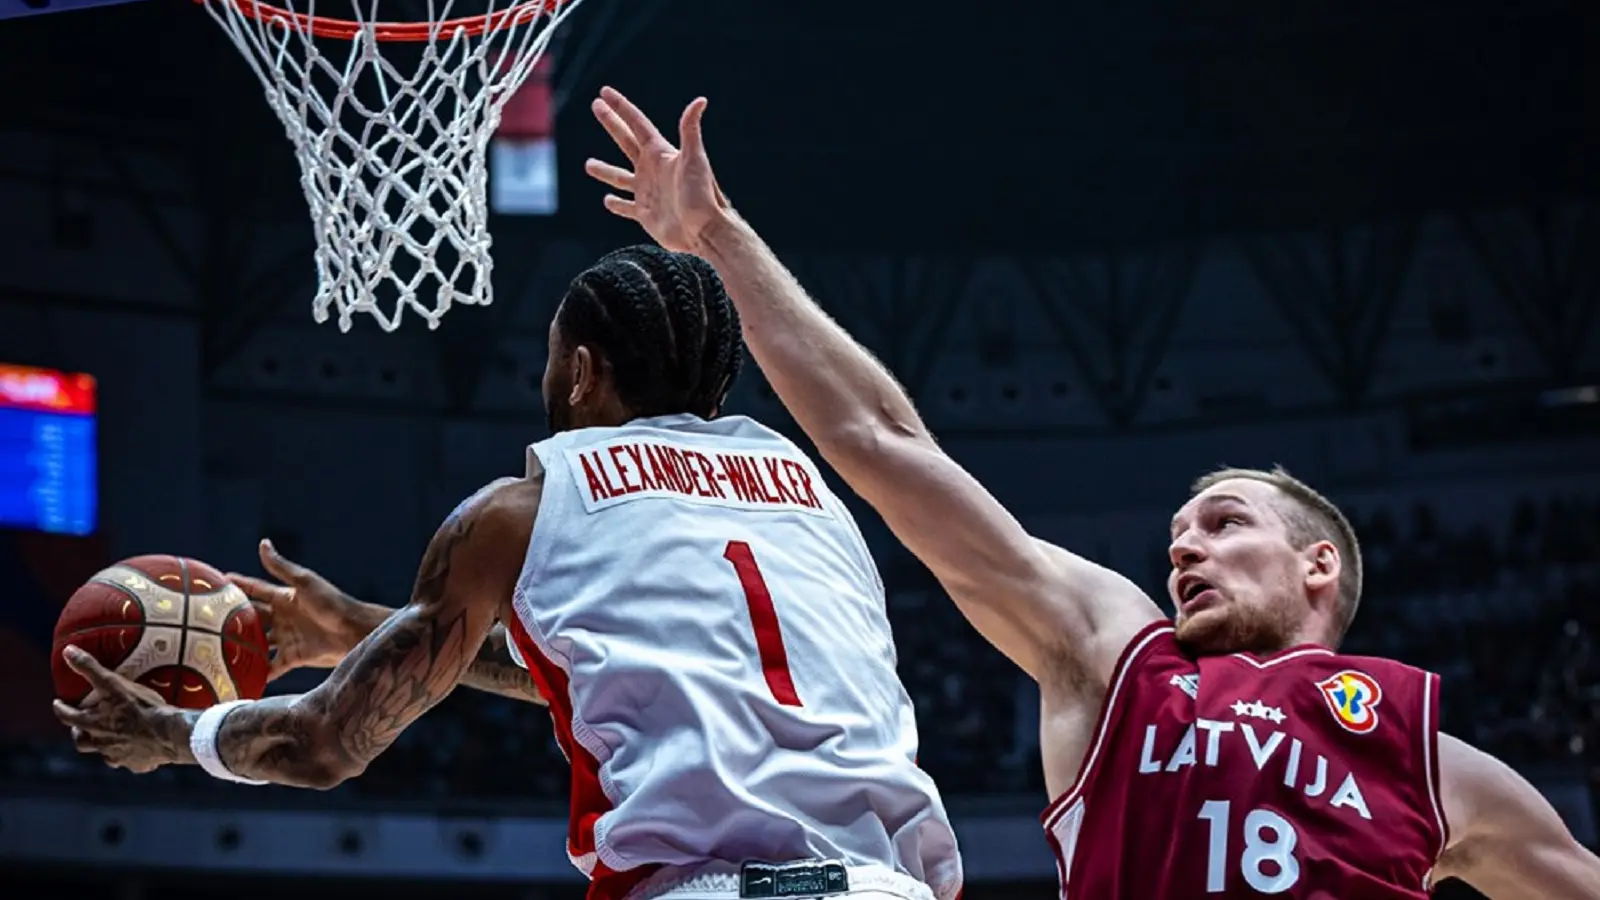 Kanada Letonija Mundobasket_FIBA-64ef59eee4669.webp